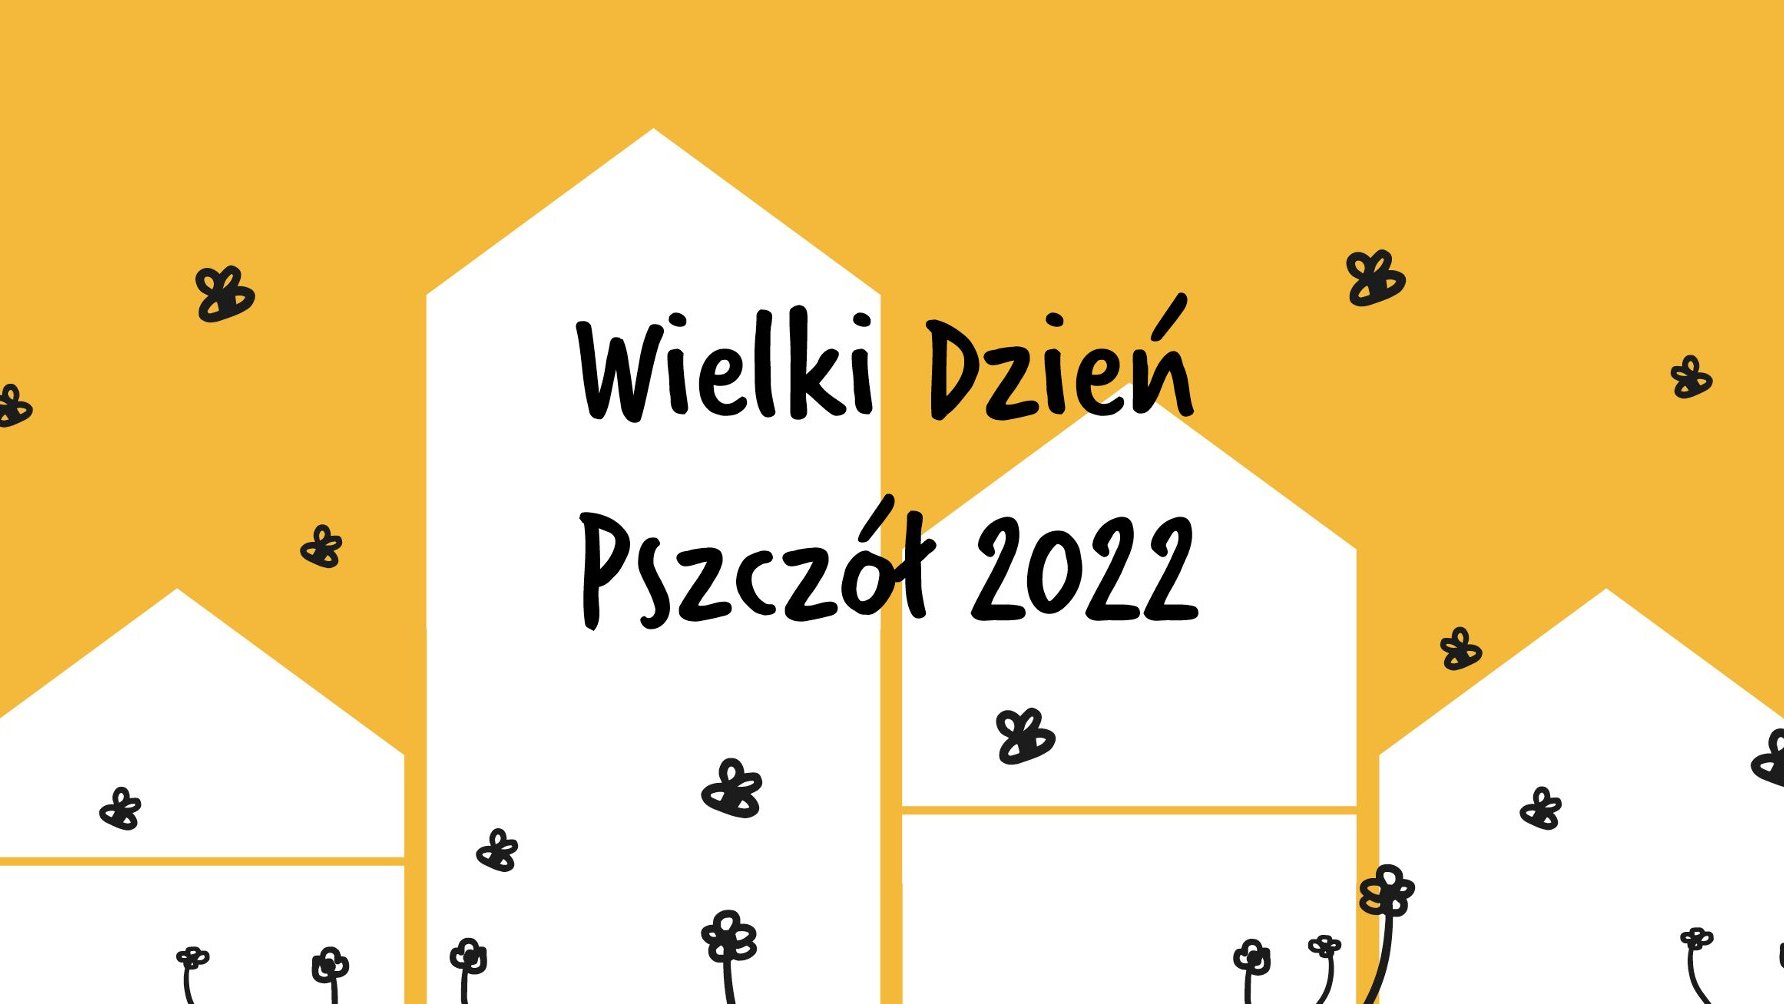 Grafika: schematyczny rysunek uli i pszczół, napis: Wielki Dzień Pszczół 2022